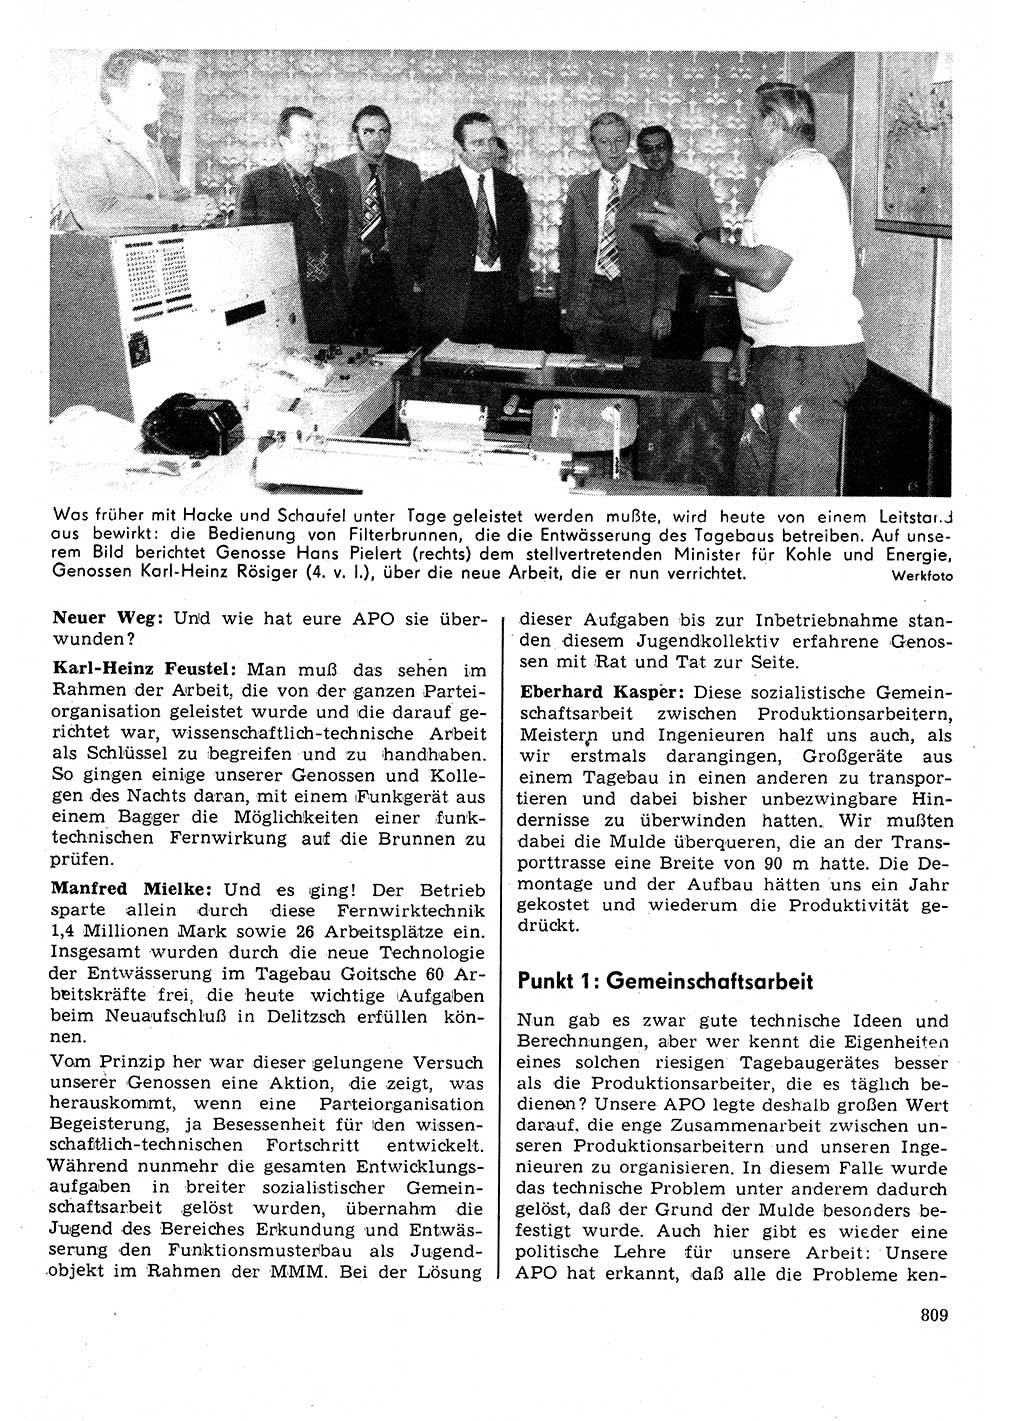 Neuer Weg (NW), Organ des Zentralkomitees (ZK) der SED (Sozialistische Einheitspartei Deutschlands) für Fragen des Parteilebens, 31. Jahrgang [Deutsche Demokratische Republik (DDR)] 1976, Seite 809 (NW ZK SED DDR 1976, S. 809)